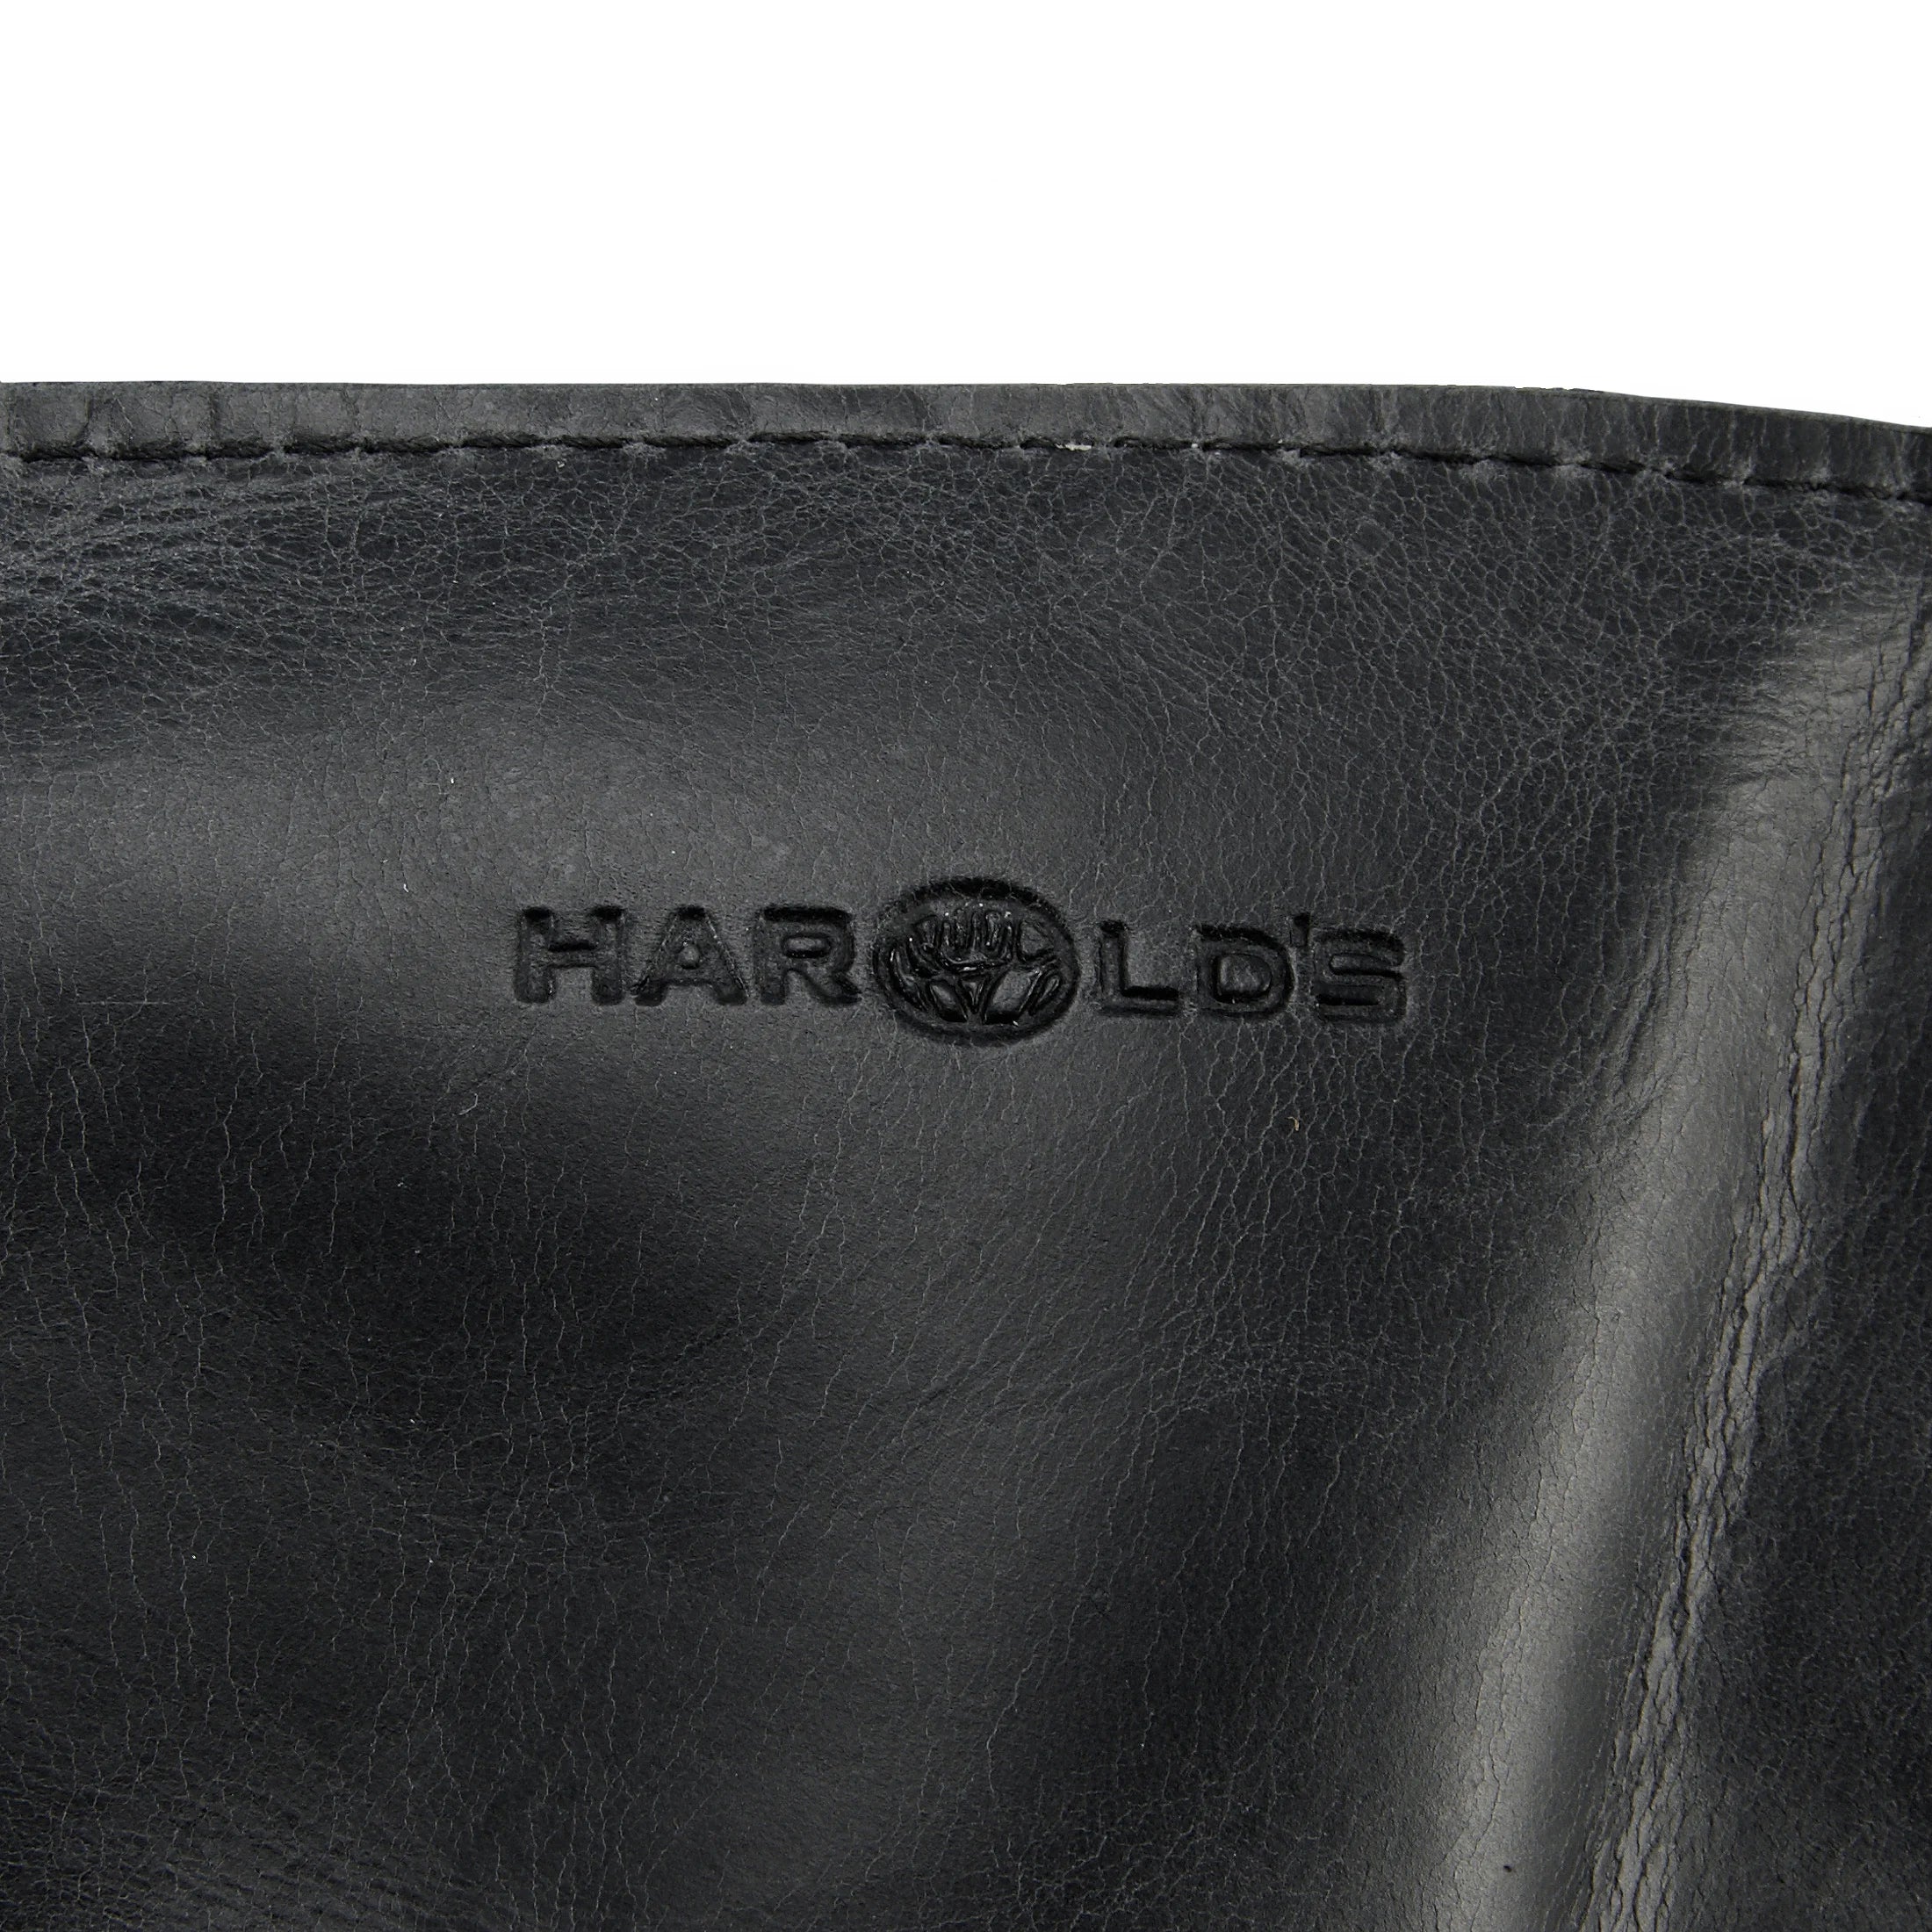 Harolds Landscape leather travel bag 51 cm - brown